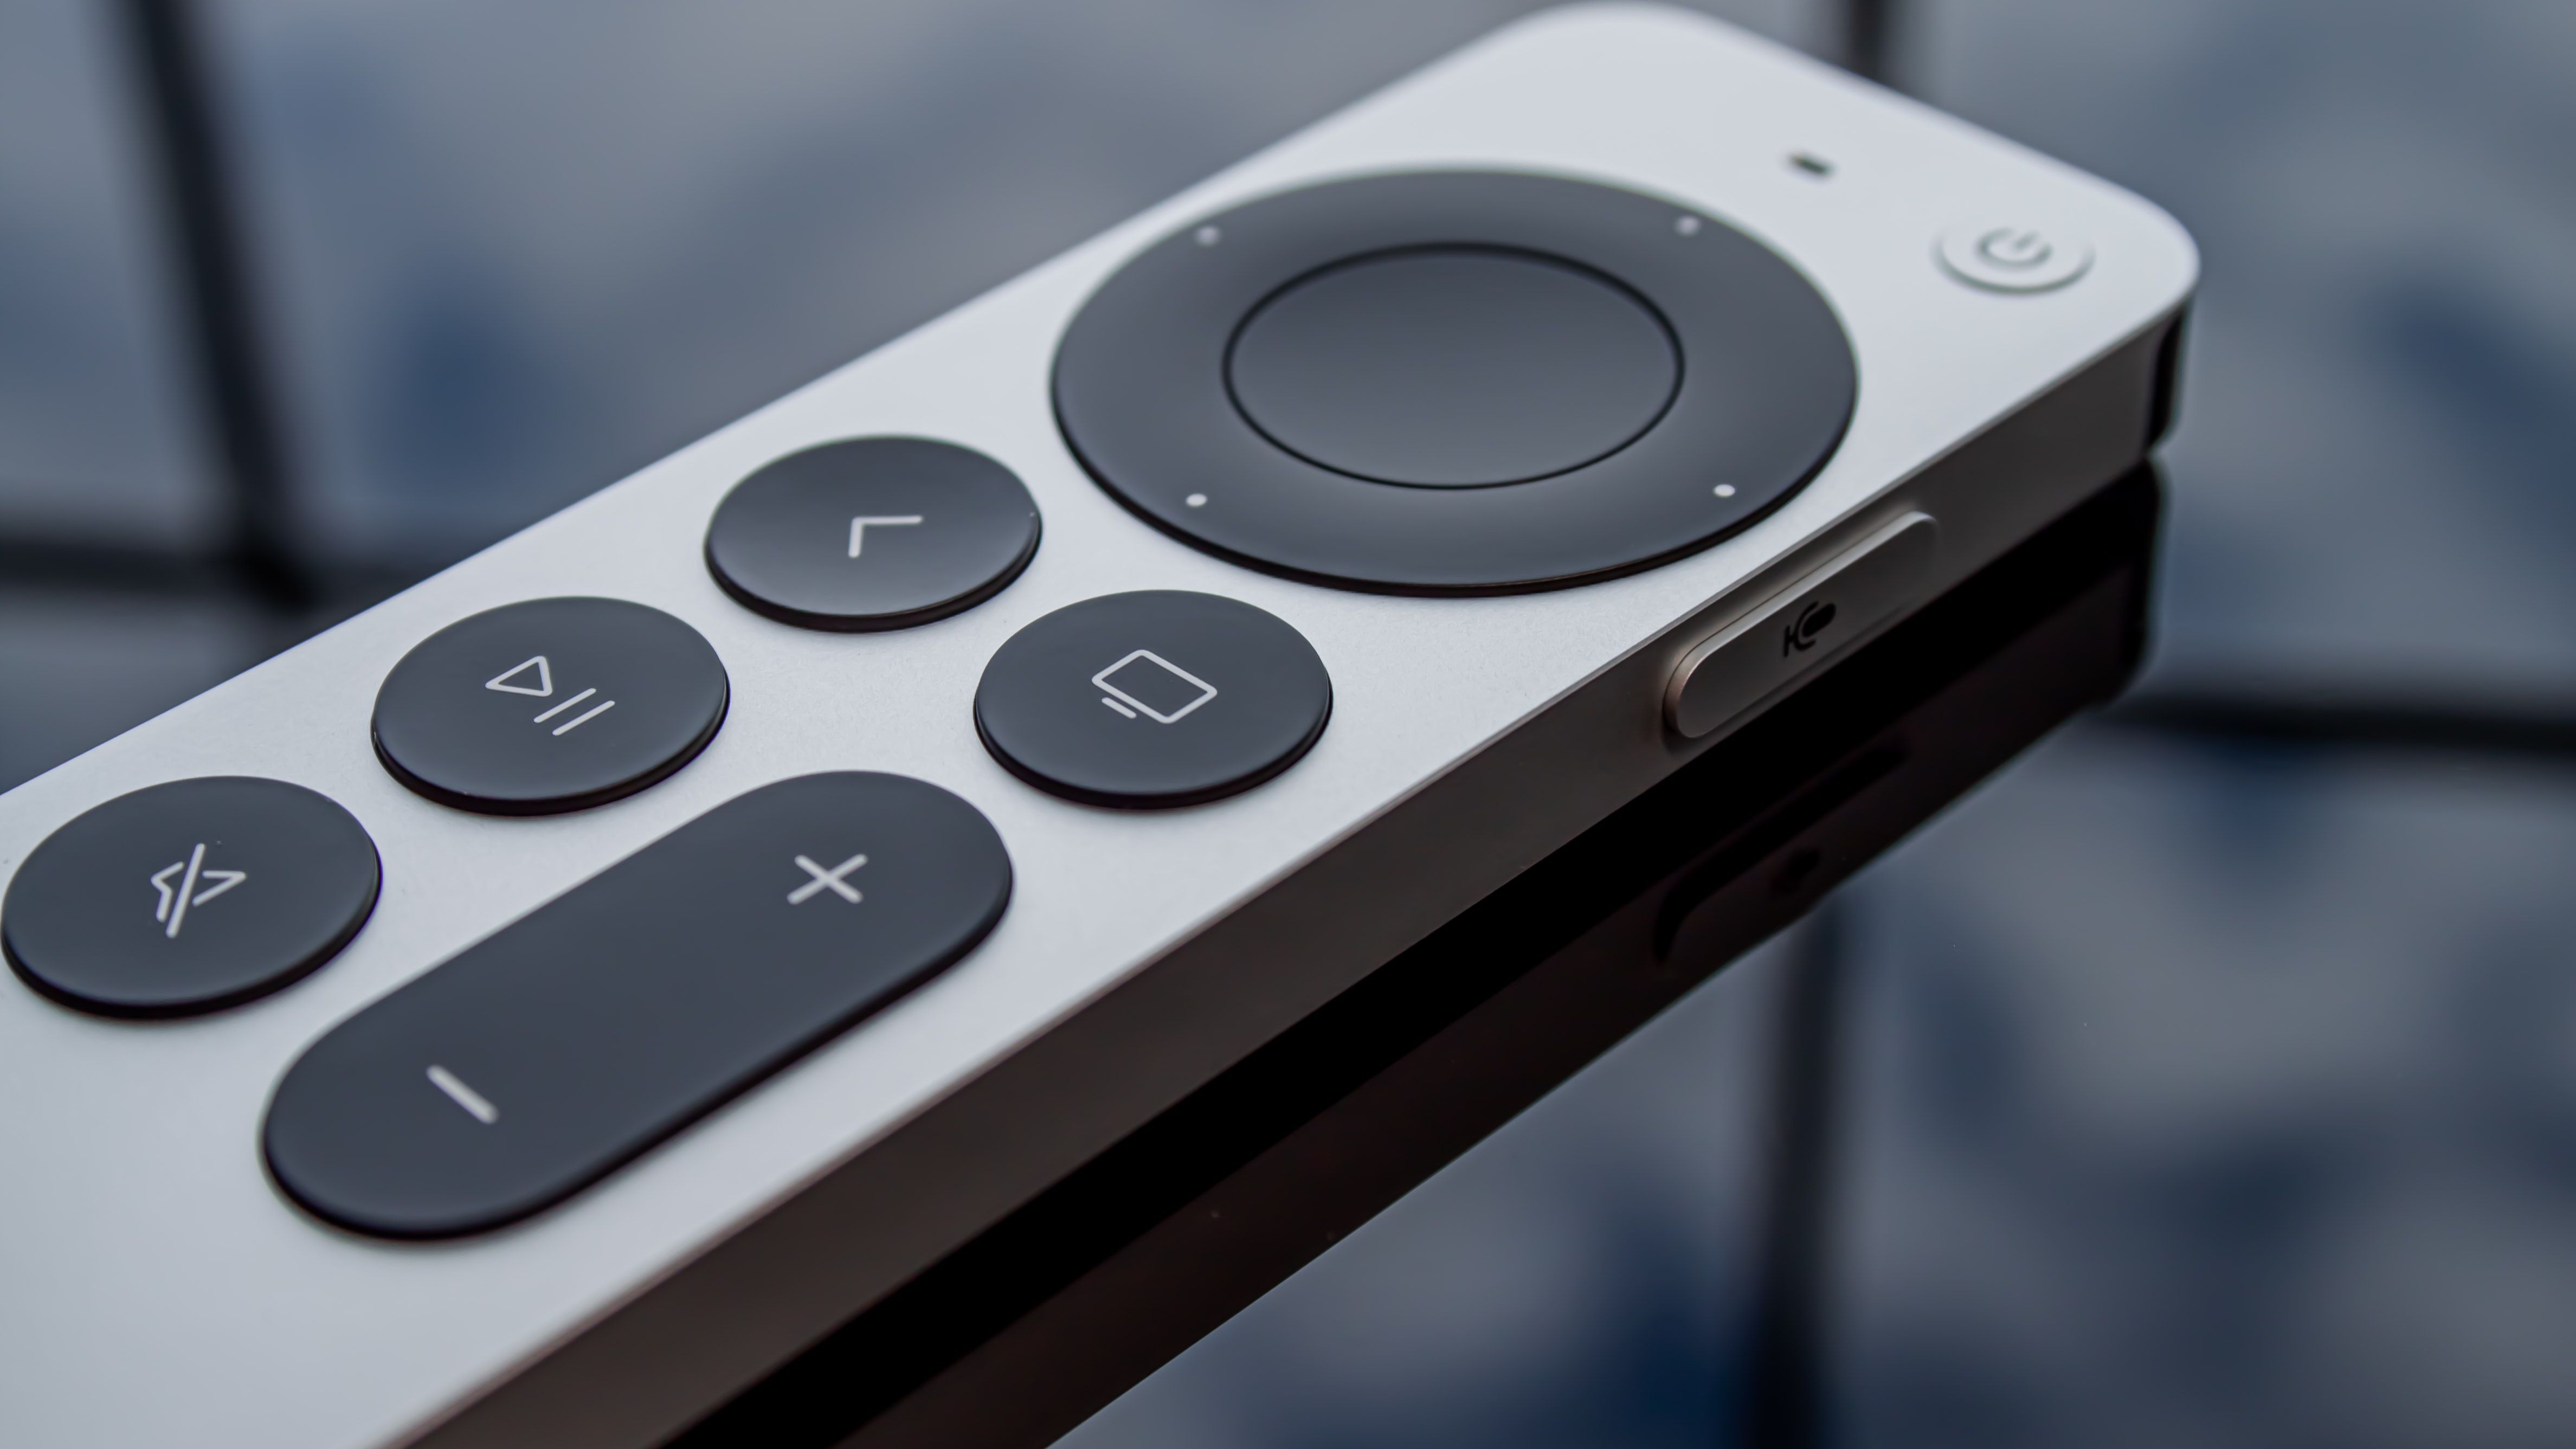 Controle a Apple TV com a Central de Controle do iOS ou iPadOS - Suporte da  Apple (BR)